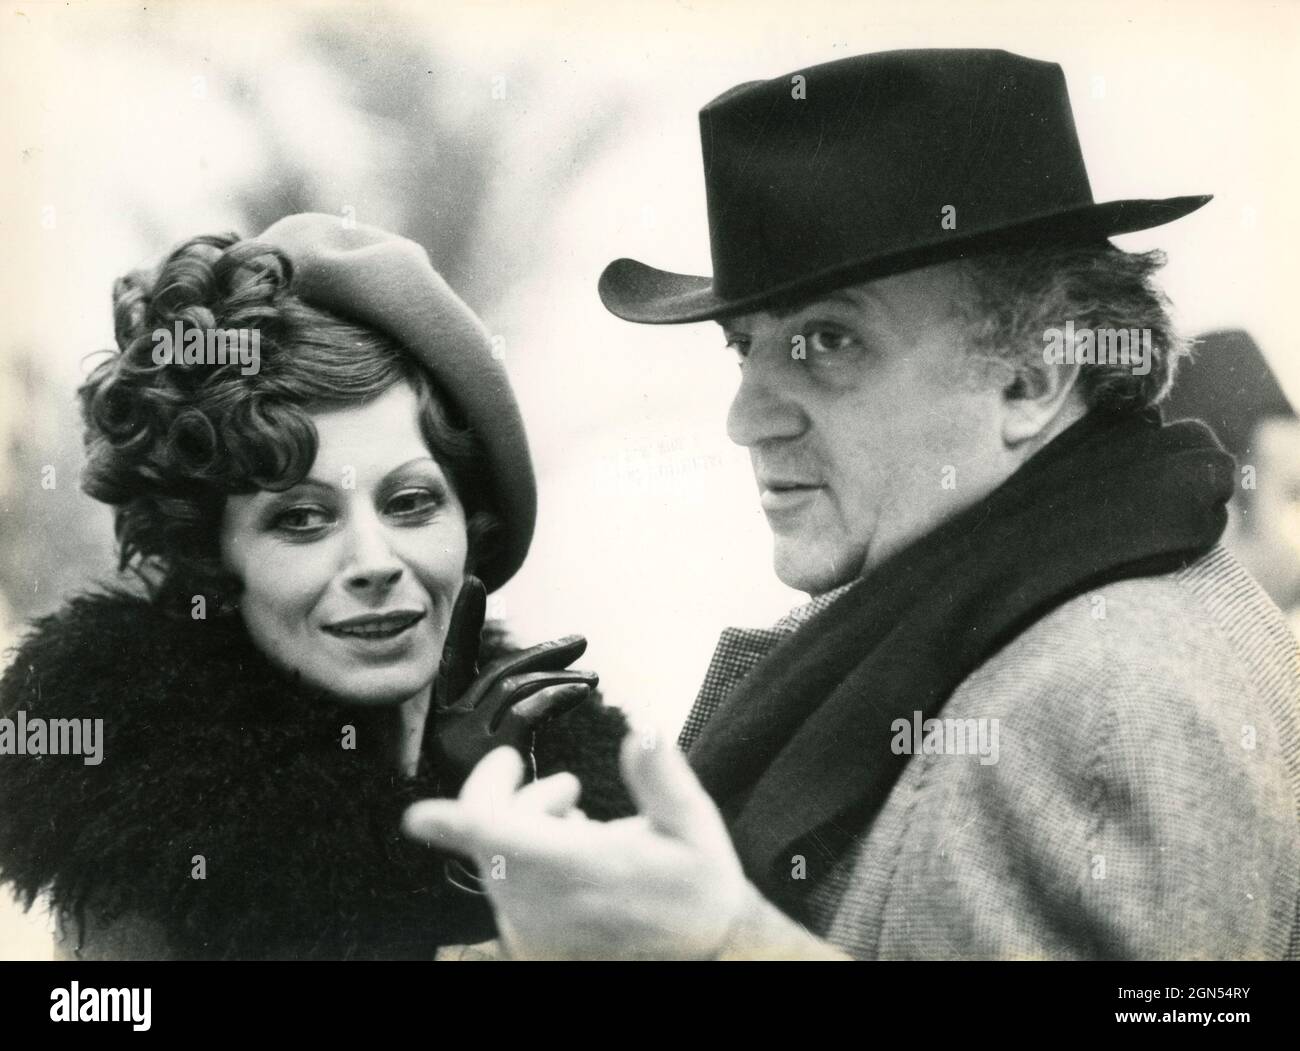 El director de cine italiano Federico Fellini y la actriz francesa Magali Noel filman la película Amarcord, 1973 Foto de stock